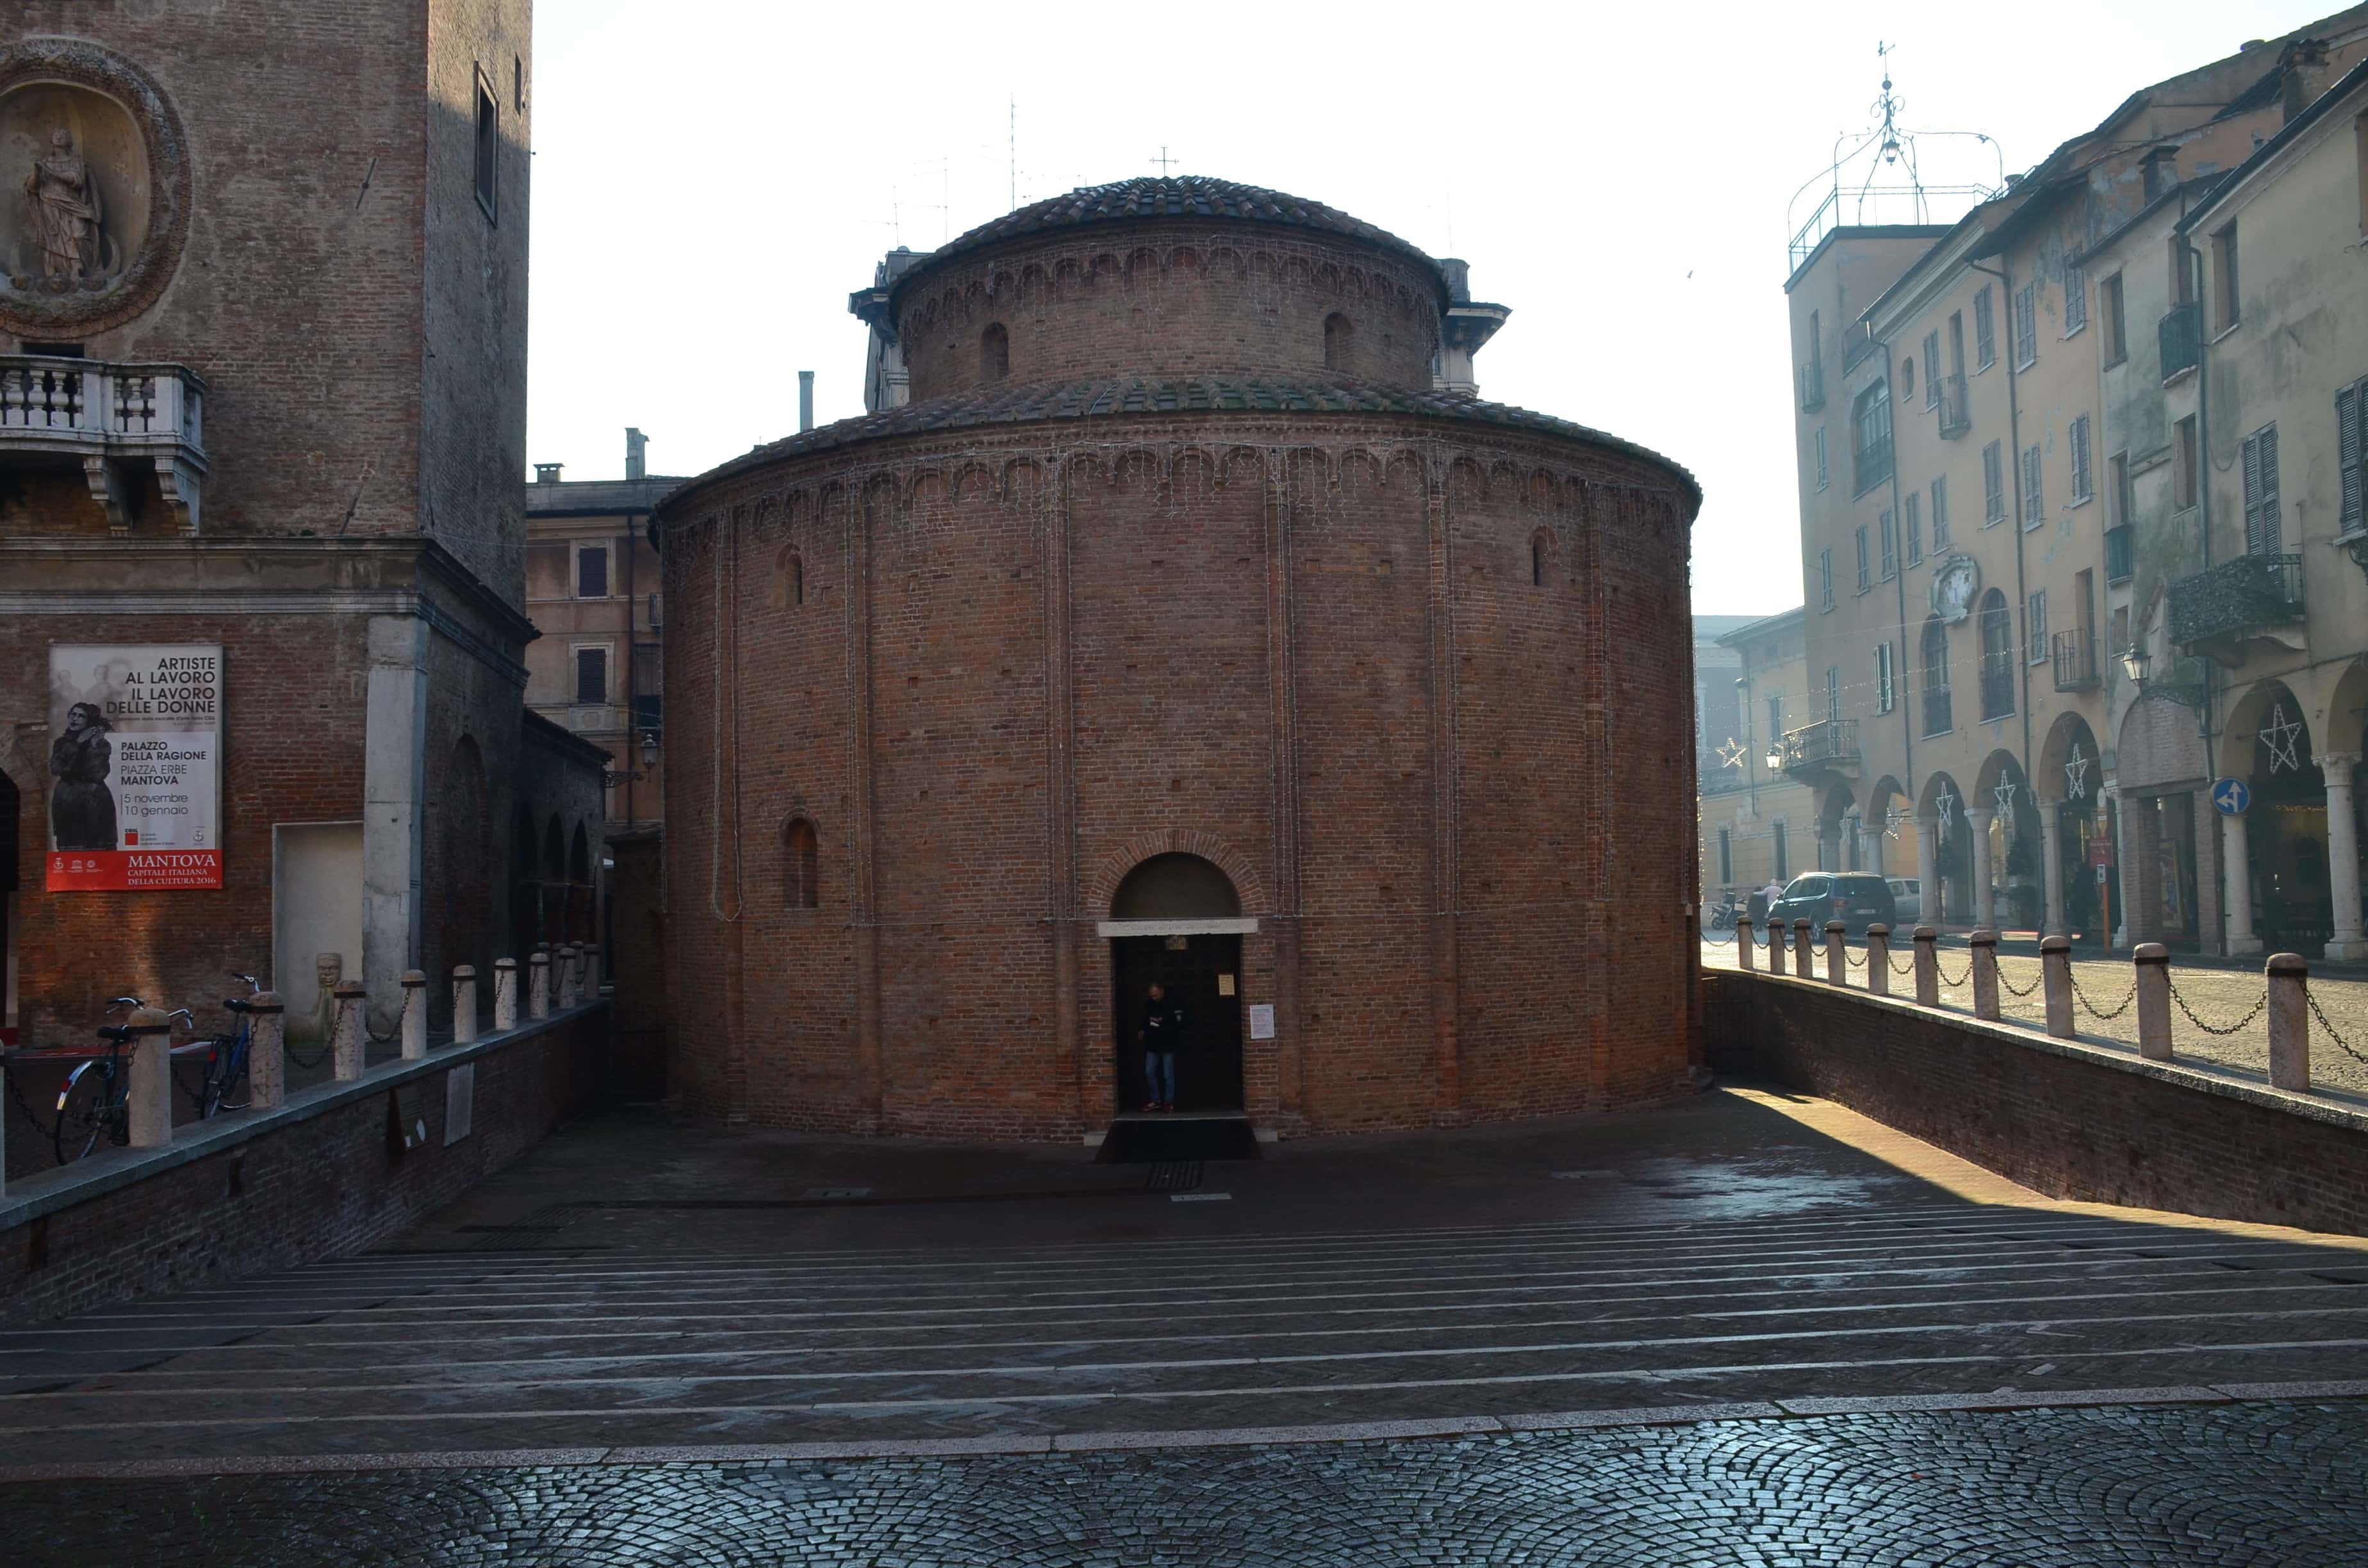 Rotunda of San Lorenzo in Mantua, Italy